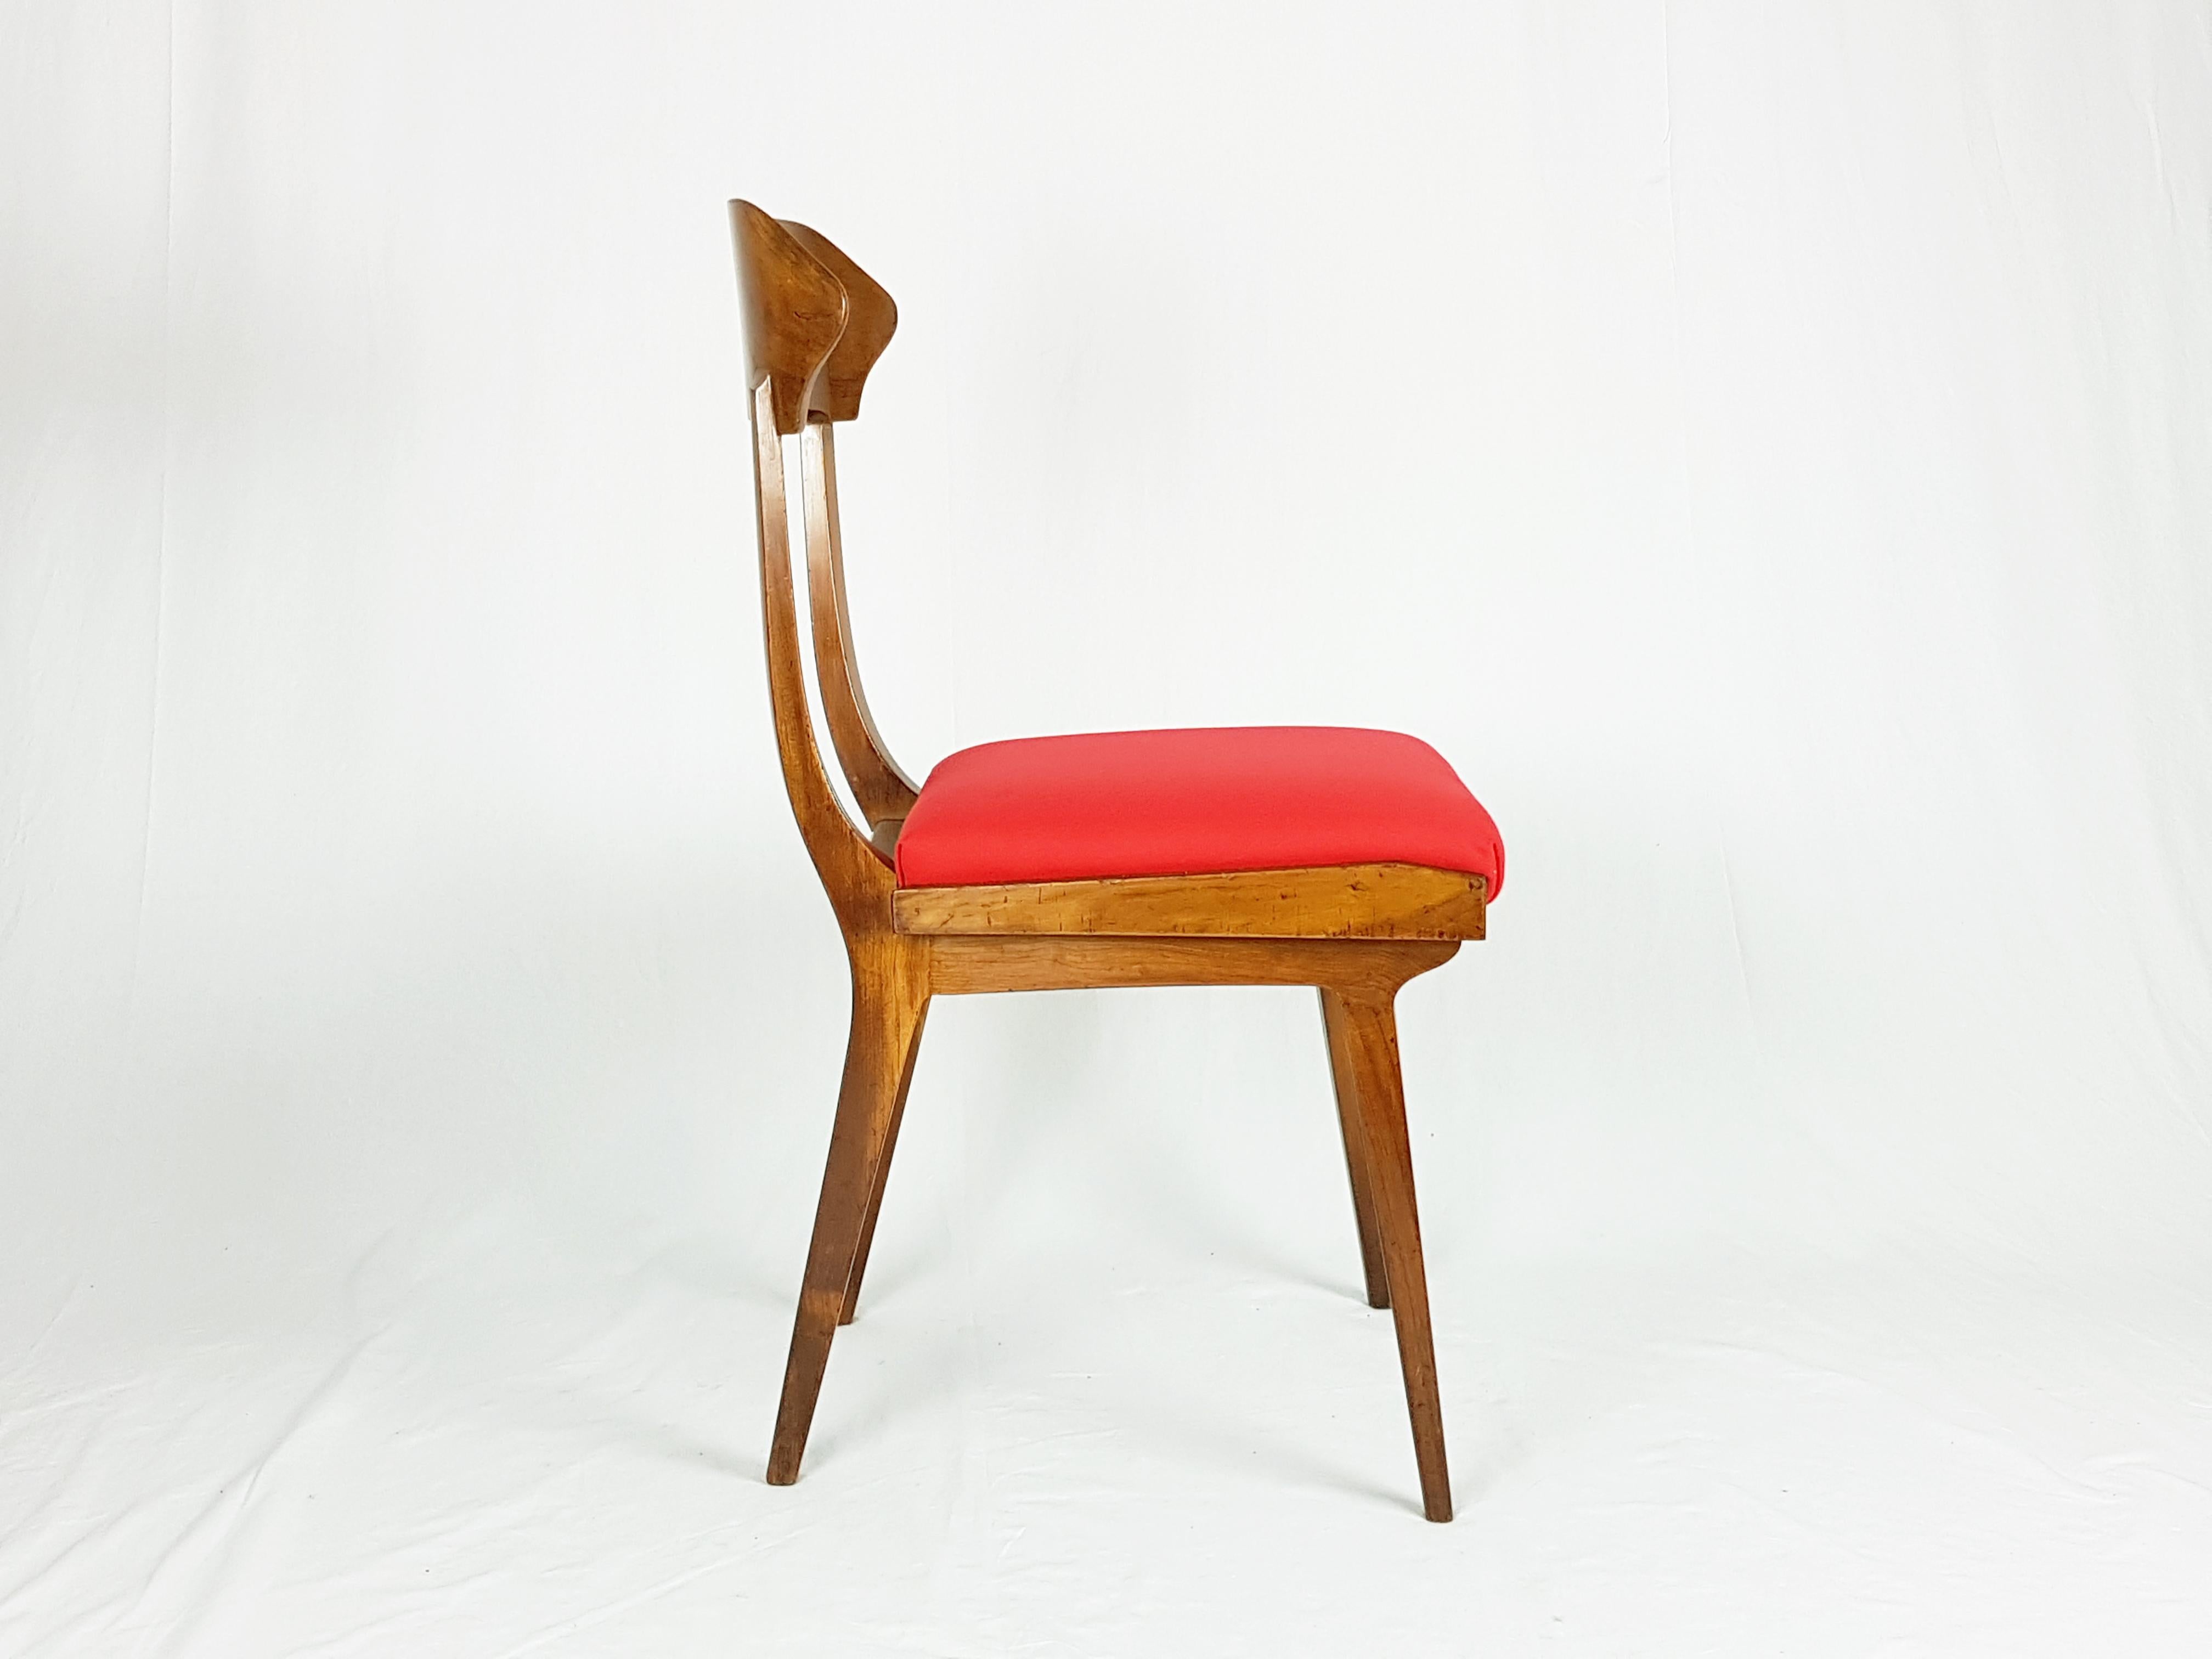 Ein Paar Stühle aus Holz und rotem Stoff, hergestellt von Fratelli Barni aus Seveso (Mailand) in den 1950er Jahren. Sehr guter Zustand: Die Stühle wurden teilweise restauriert und neu gepolstert. Das Herstelleretikett befindet sich auf dem Sitz.